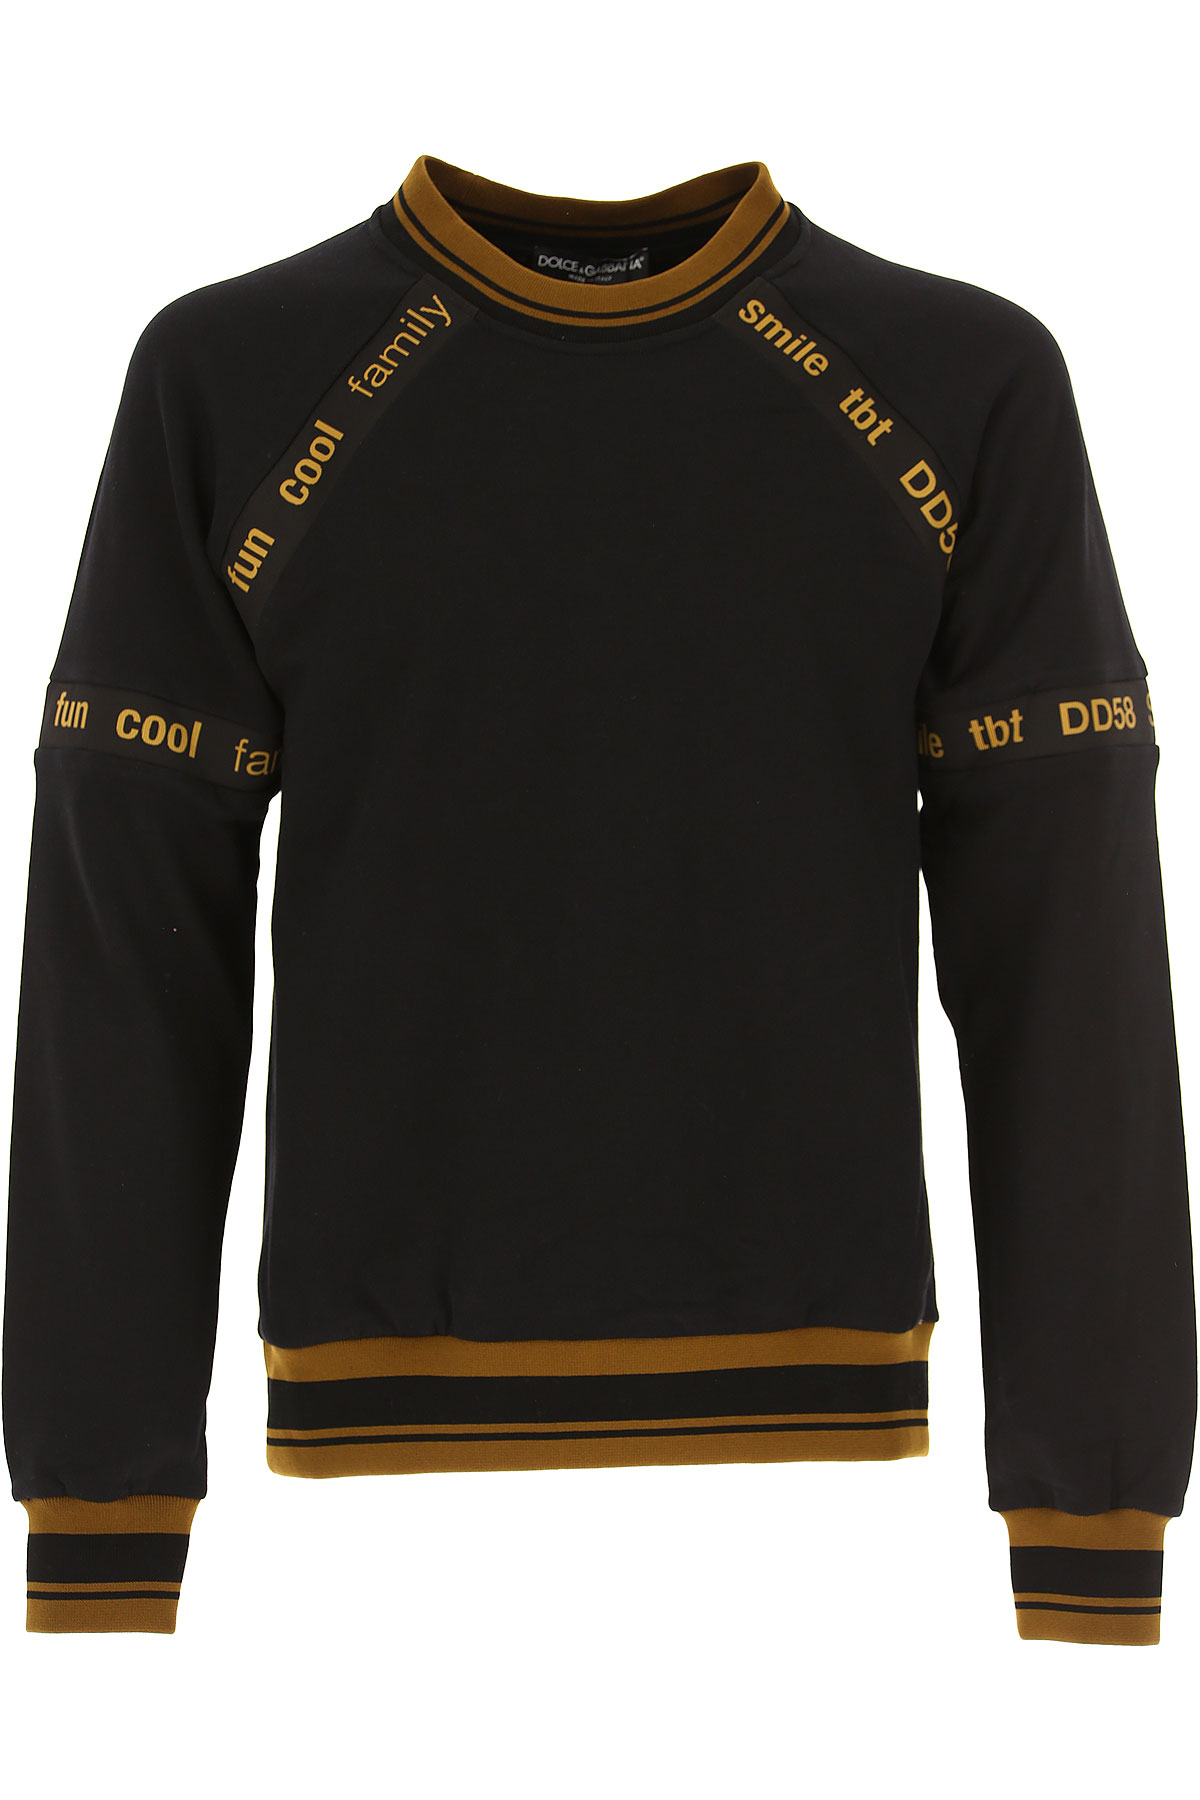 Dolce & Gabbana Sweat Homme Outlet, Noir, Coton, 2017, L M S XS